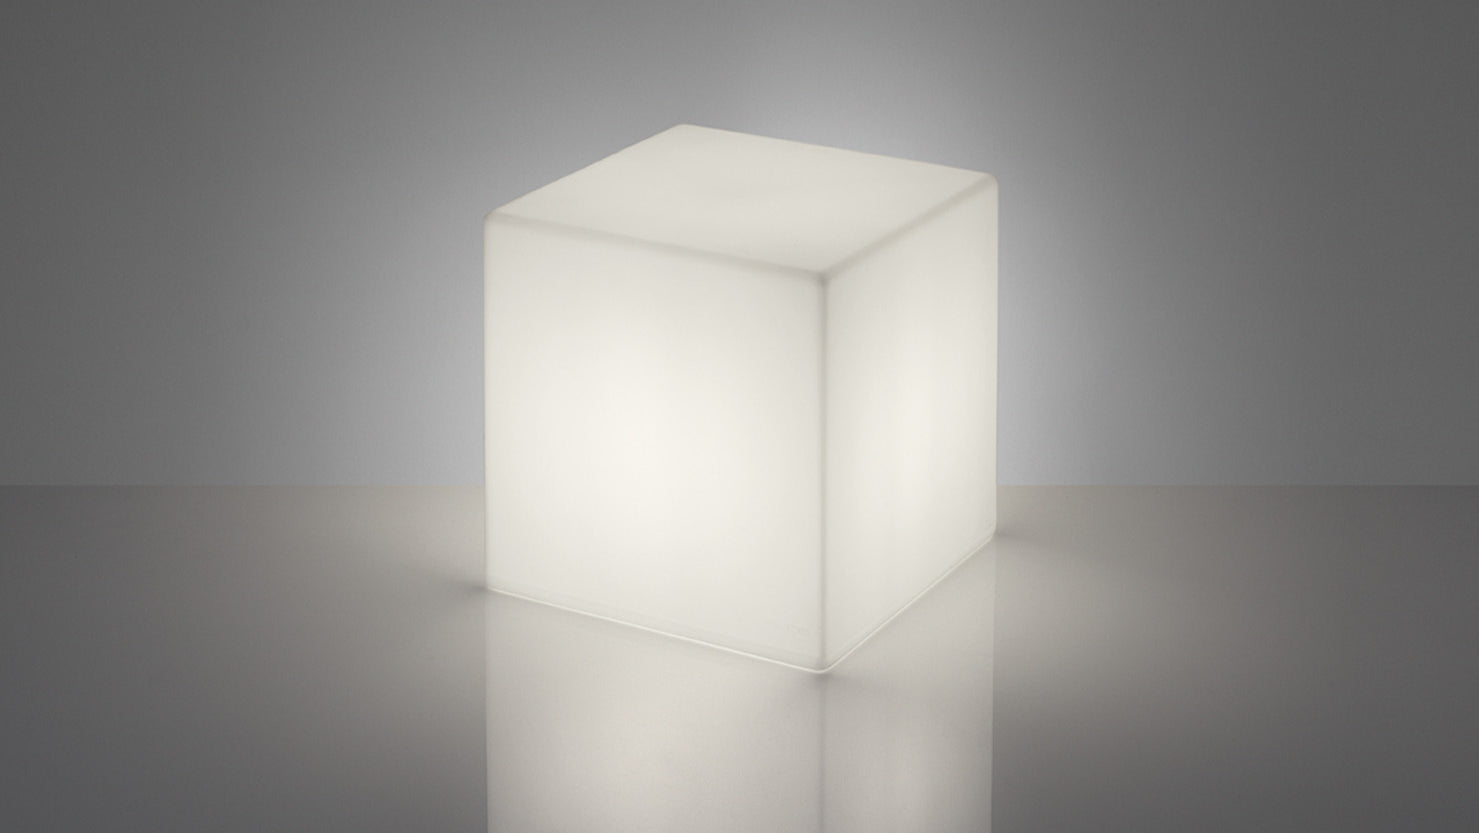 4er Set - Beleuchtbare Podeste SLIDE CUBO 40 für Indoor + Outdoor | Leuchtmöbel | LED Cube